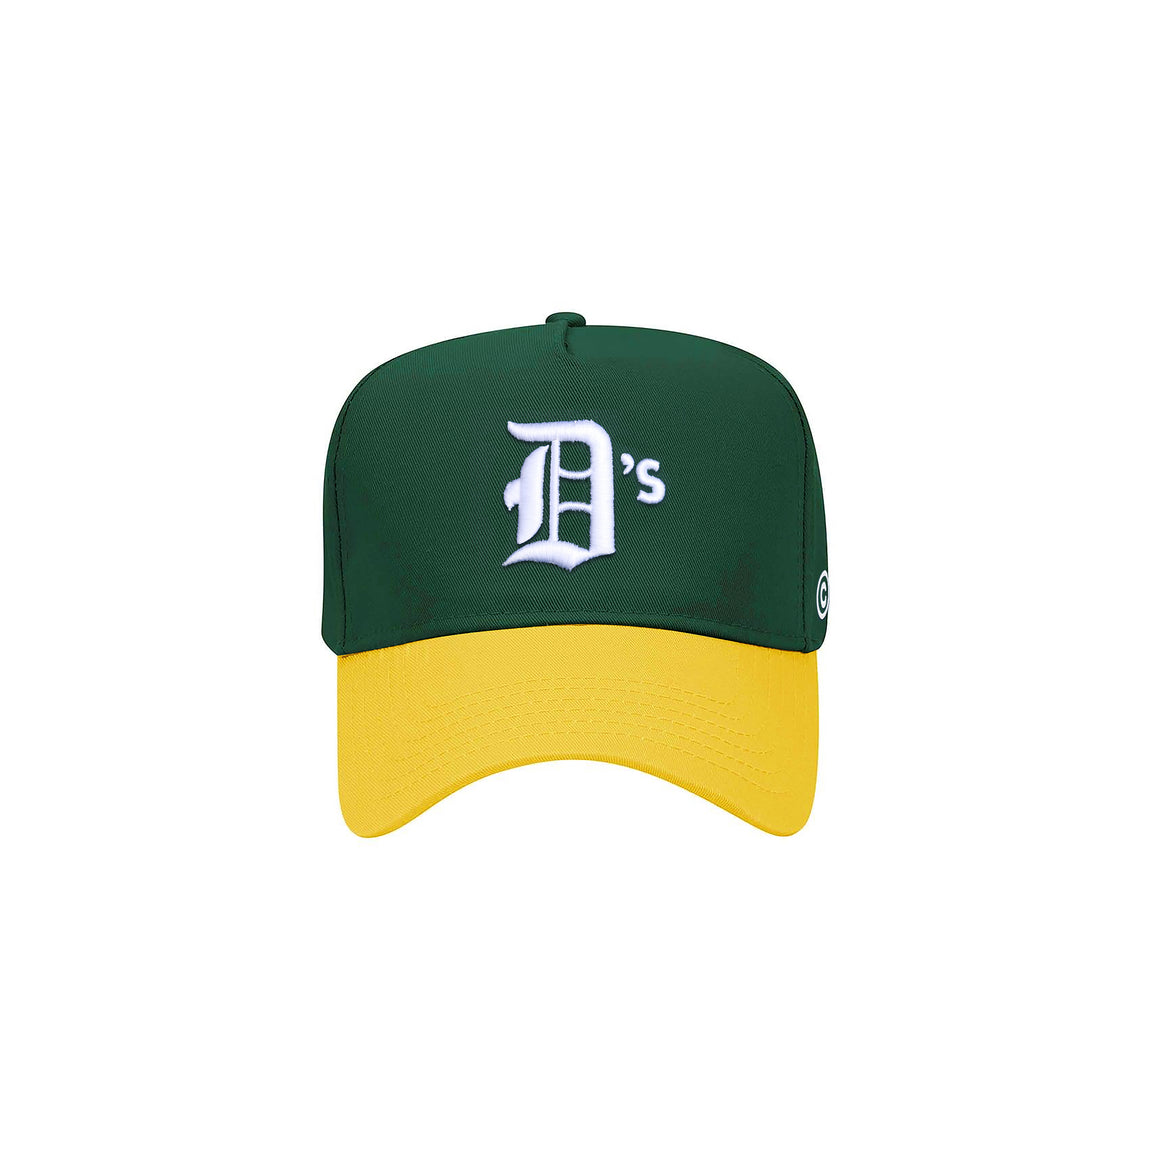 Centre D’s Baseball Hat (Green/Yellow) - Centre D’s Baseball Hat (Green/Yellow) - 